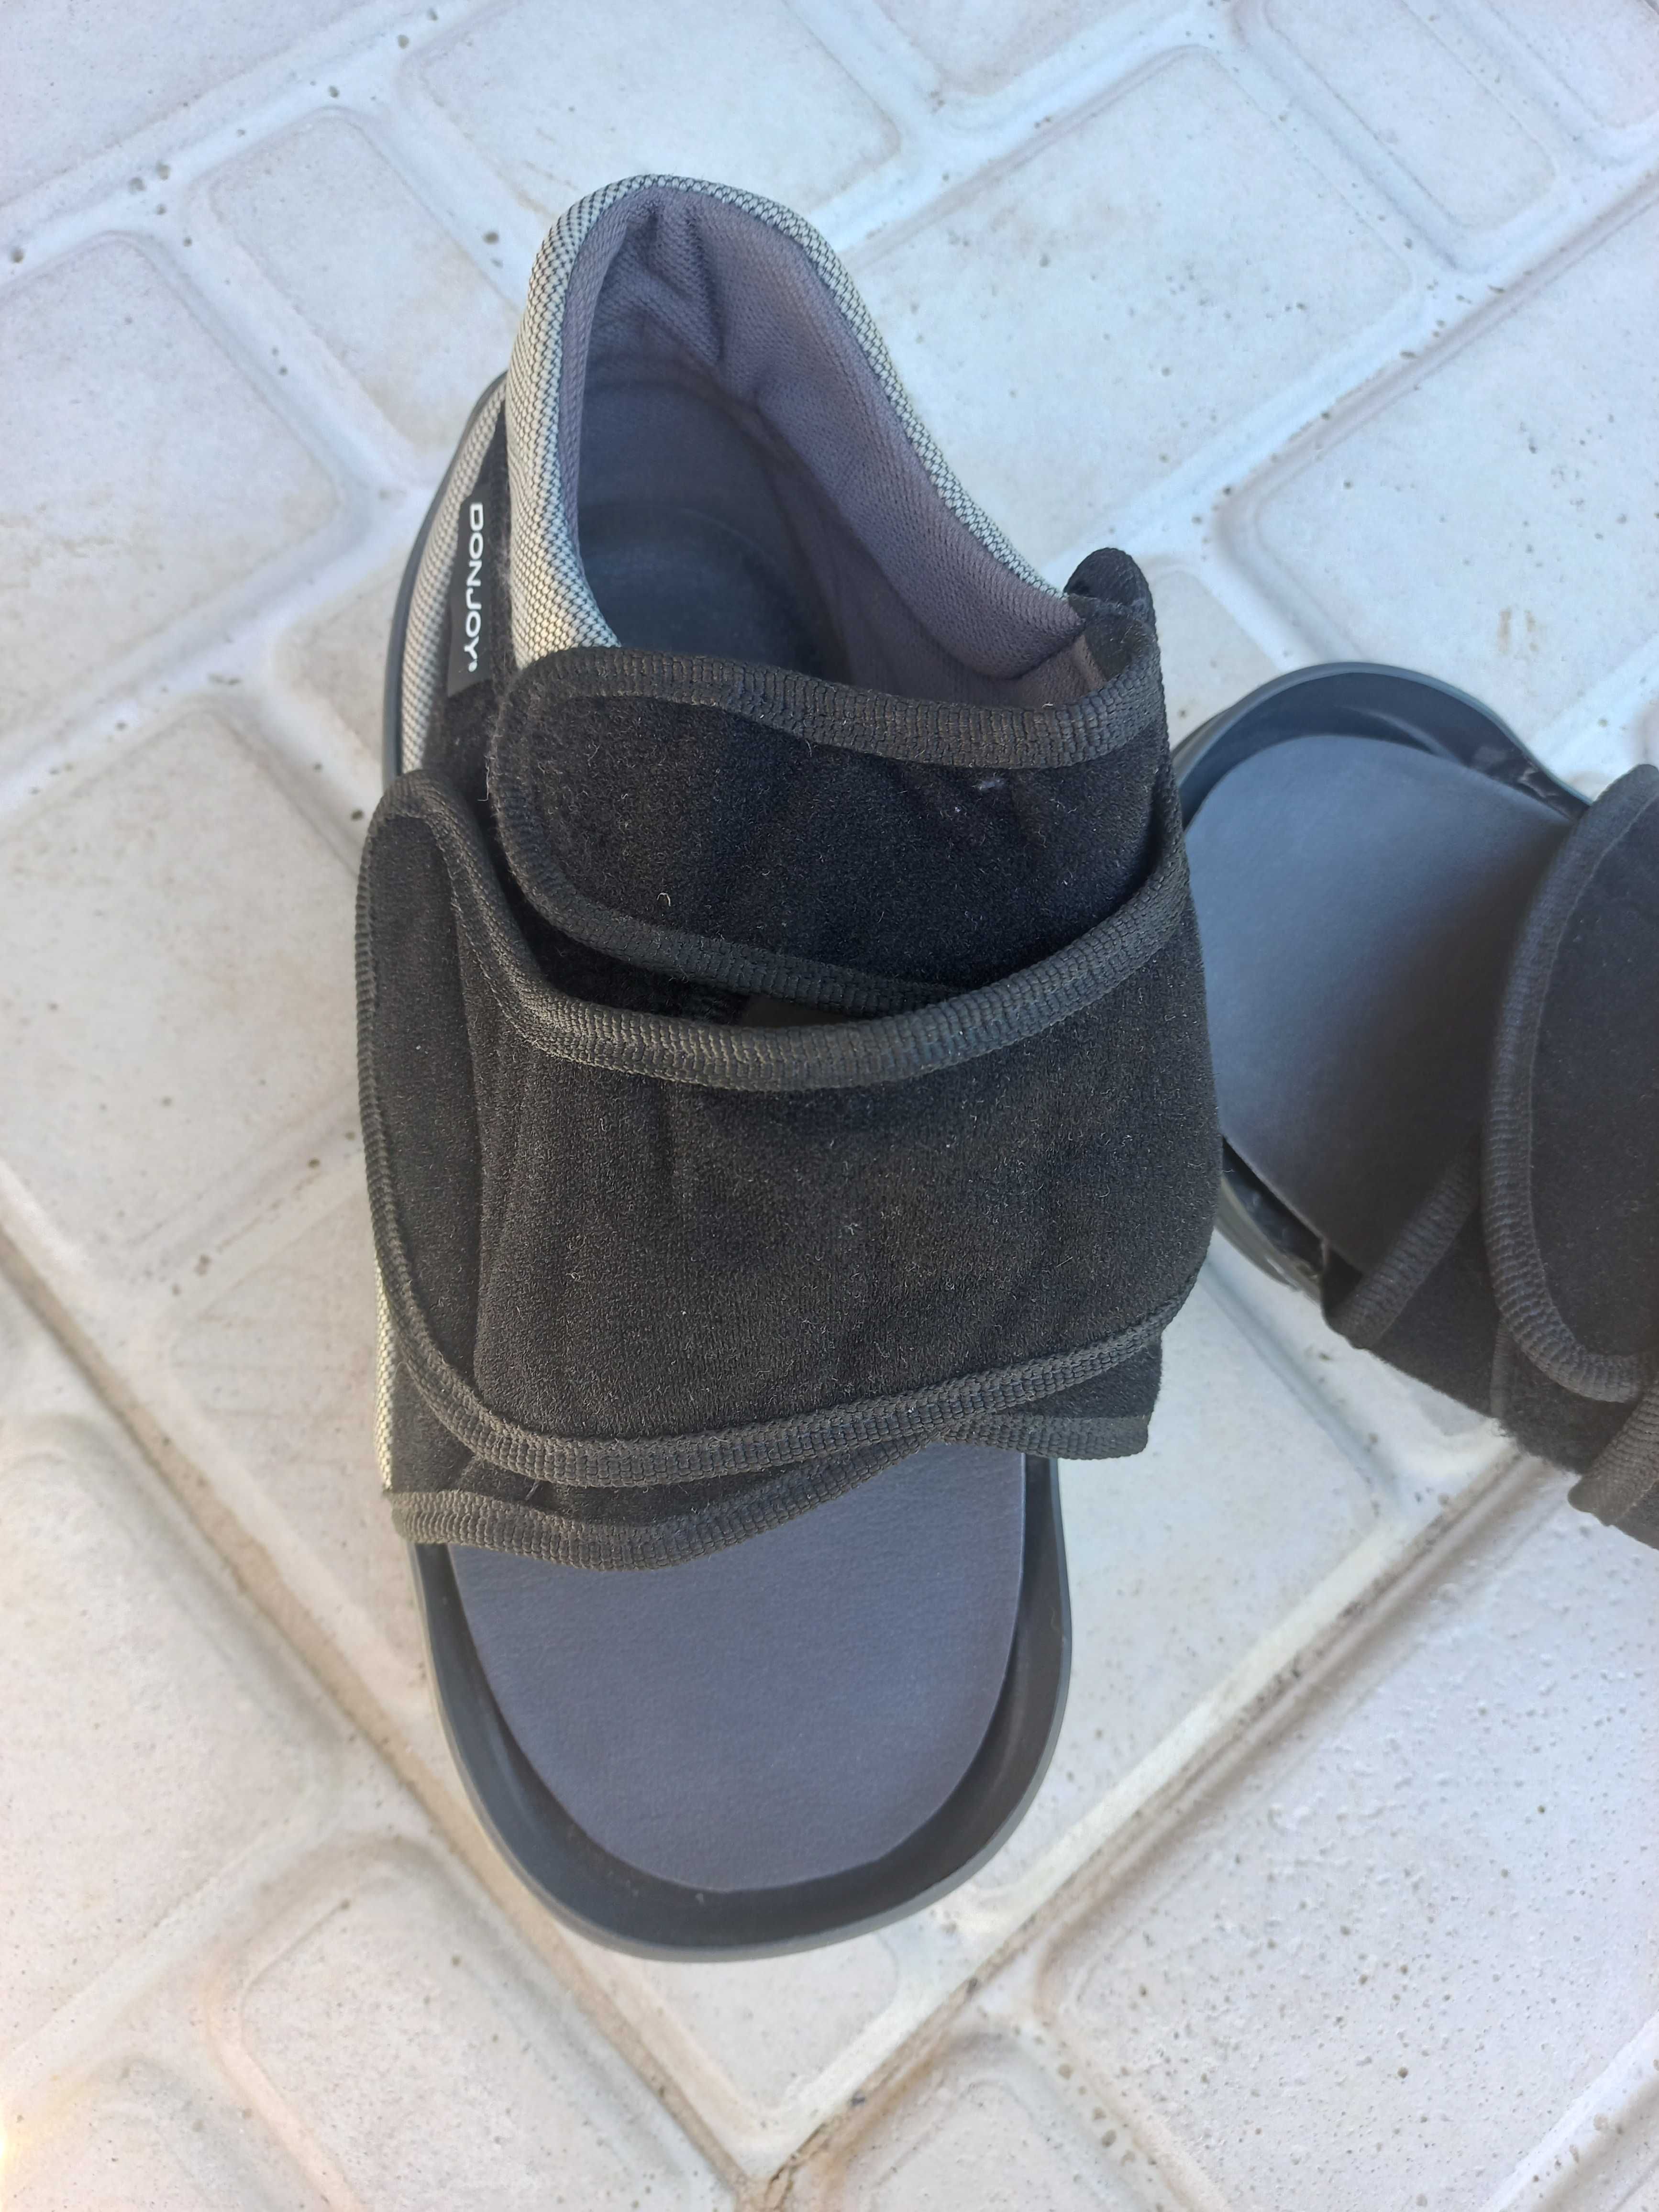 Послеоперационная защита обуви Donjoy Podalux 2